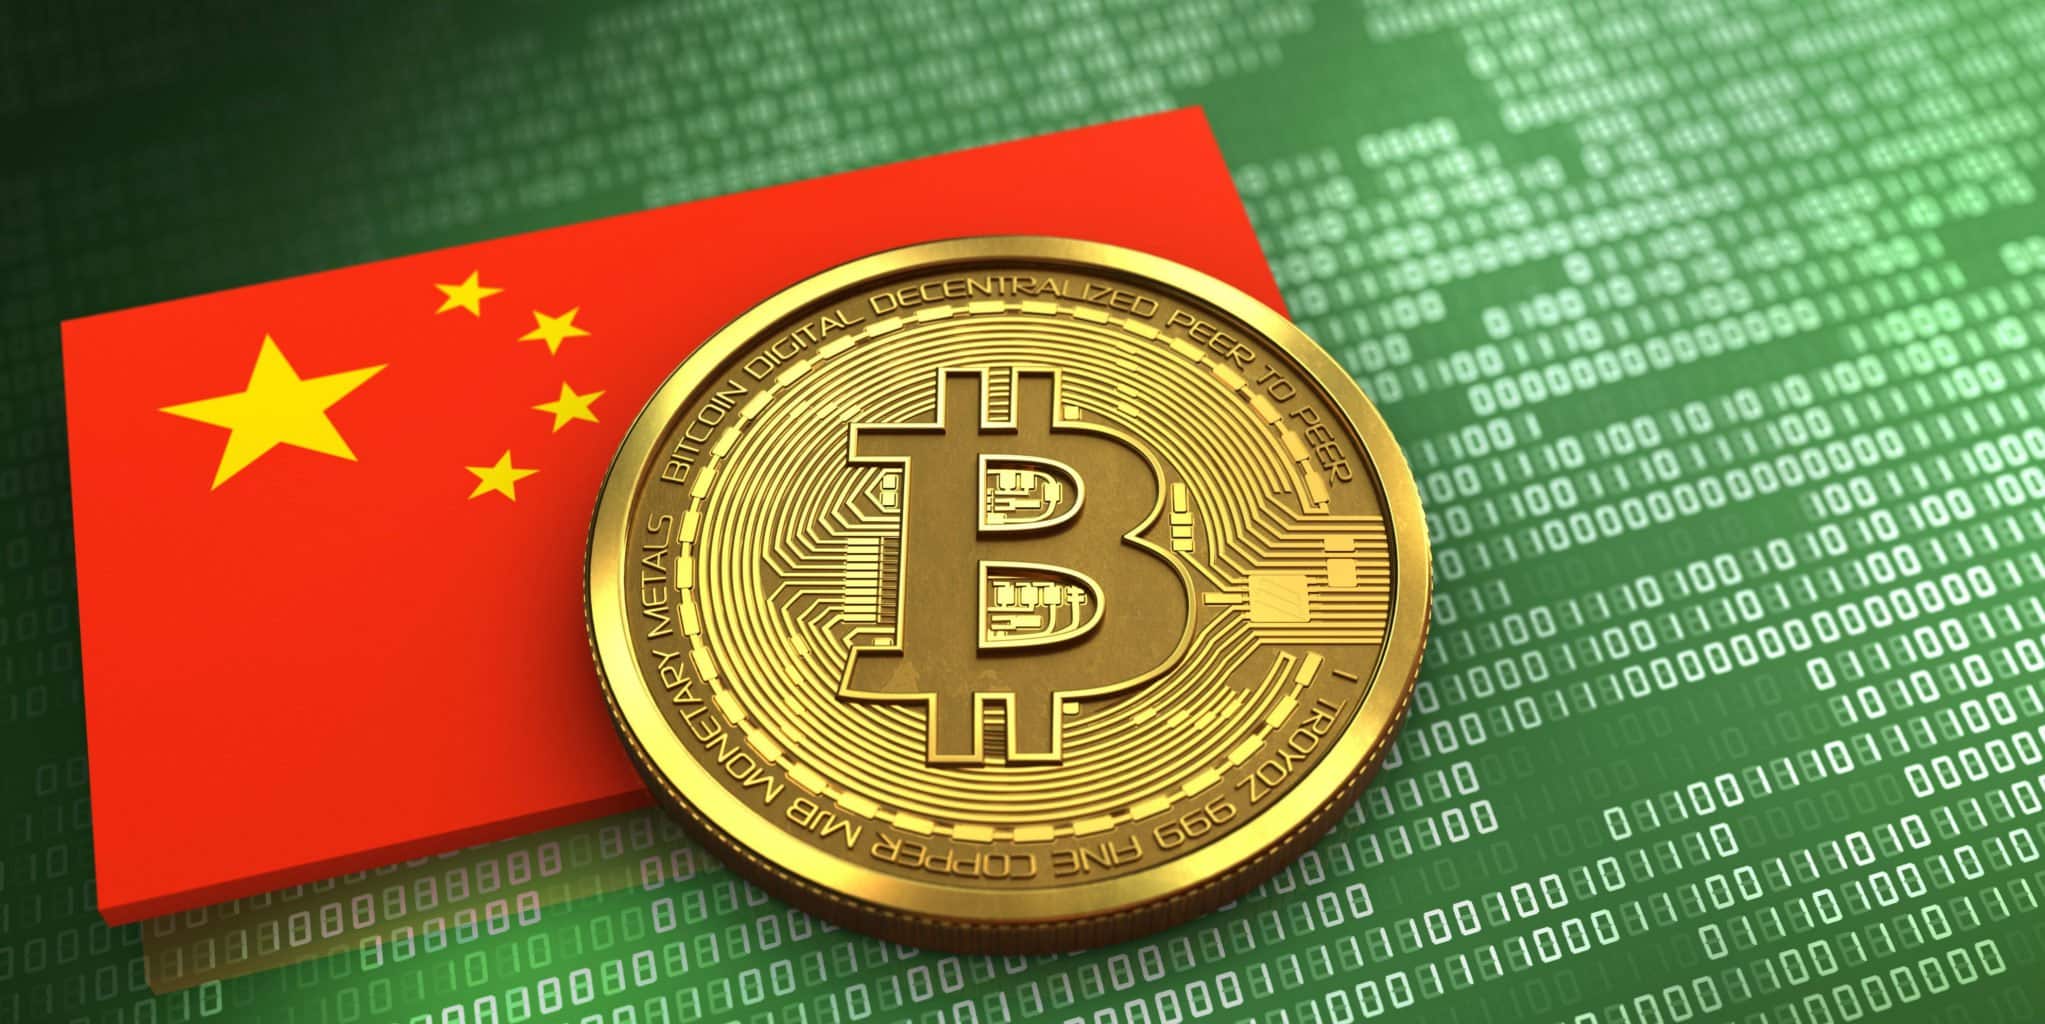 china crypto news